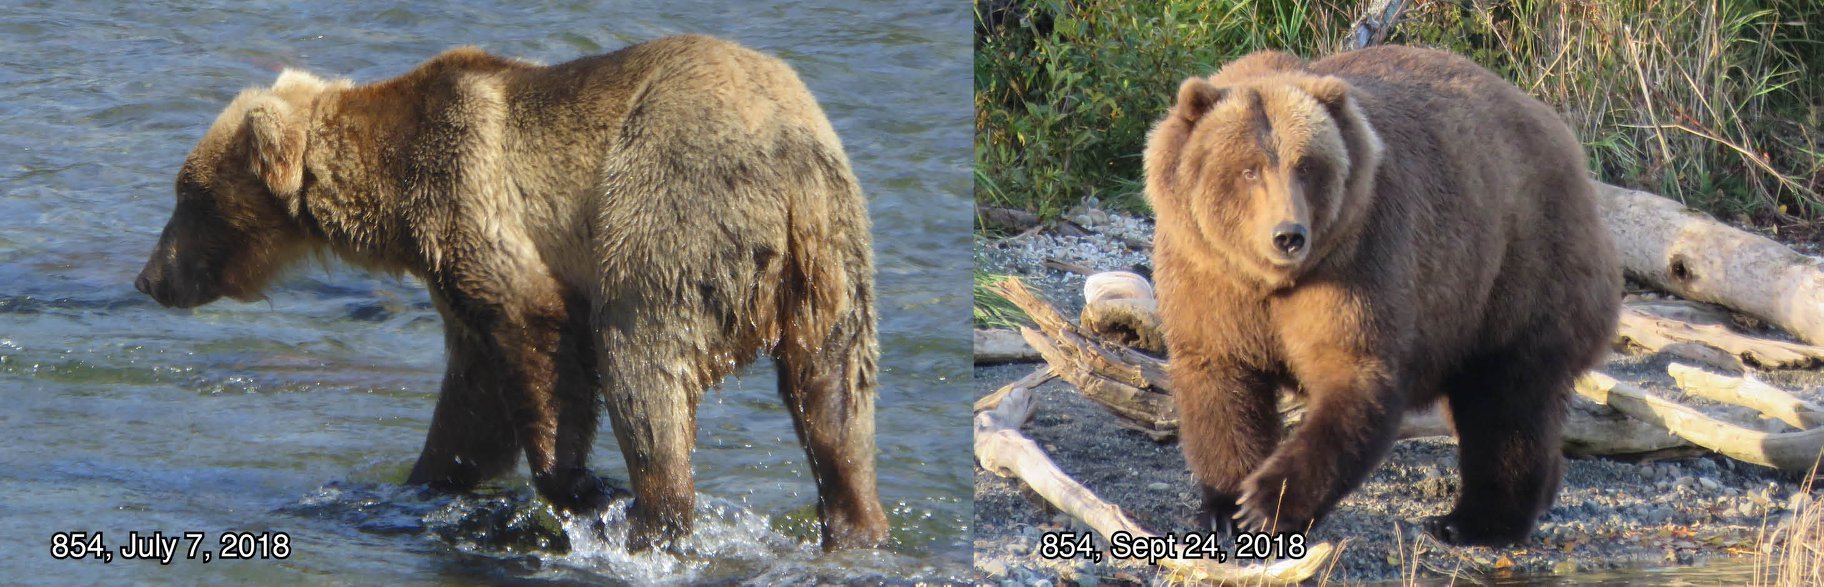 жирные медведи аляски самый жирный медведь фото отвратительные мужики disgusting men